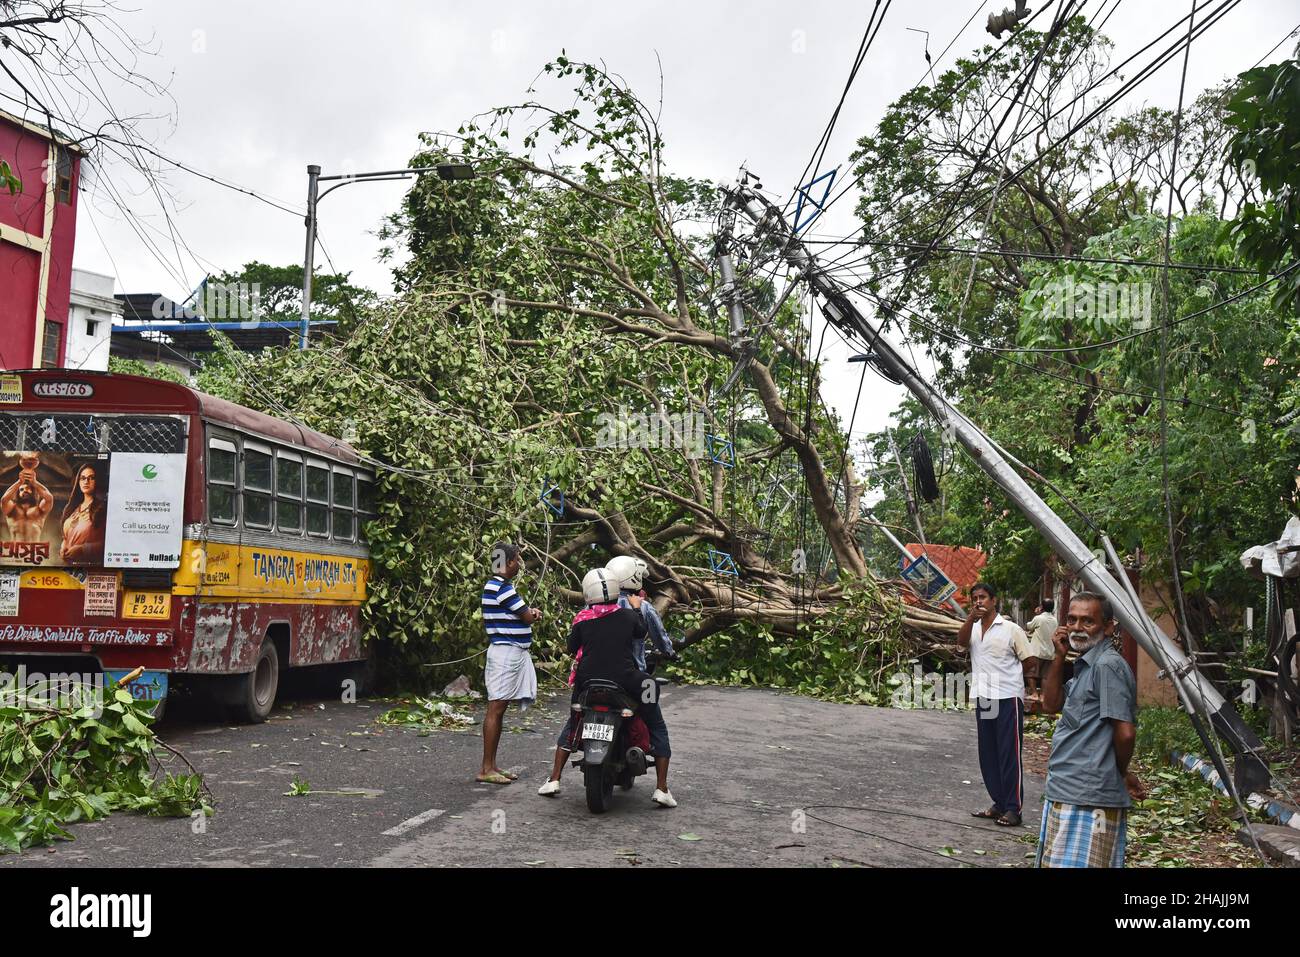 Tempesta super ciclonica Amphan era un potente e catastrofico ciclone tropicale che ha causato danni diffusi nell'India orientale, in particolare nel Bengala occidentale e in Odisha. Il ciclone ha ucciso almeno 84 persone in India e Bangladesh. Kolkata, India. Foto Stock